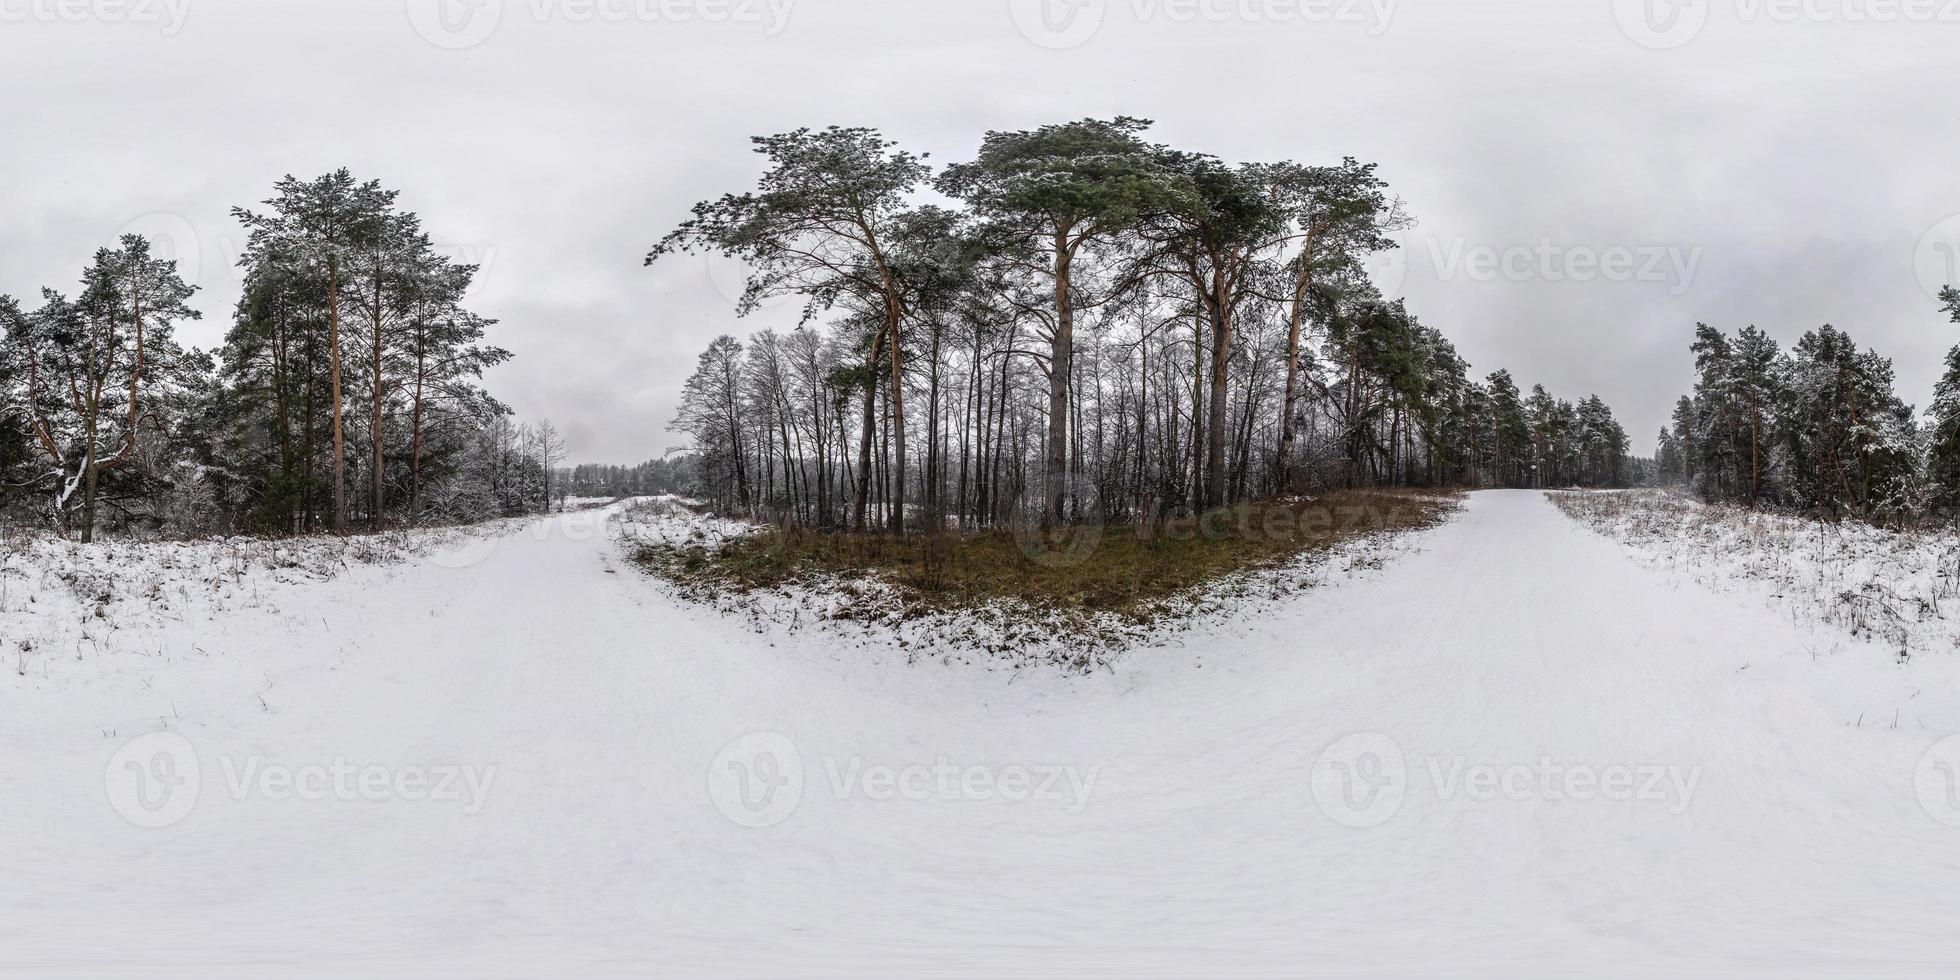 panorama hdri esférico completo de inverno estrada de visão de ângulo de 360 graus em uma floresta de pinheiros nevado com céu cinza pálido em projeção equirretangular. conteúdo vr foto